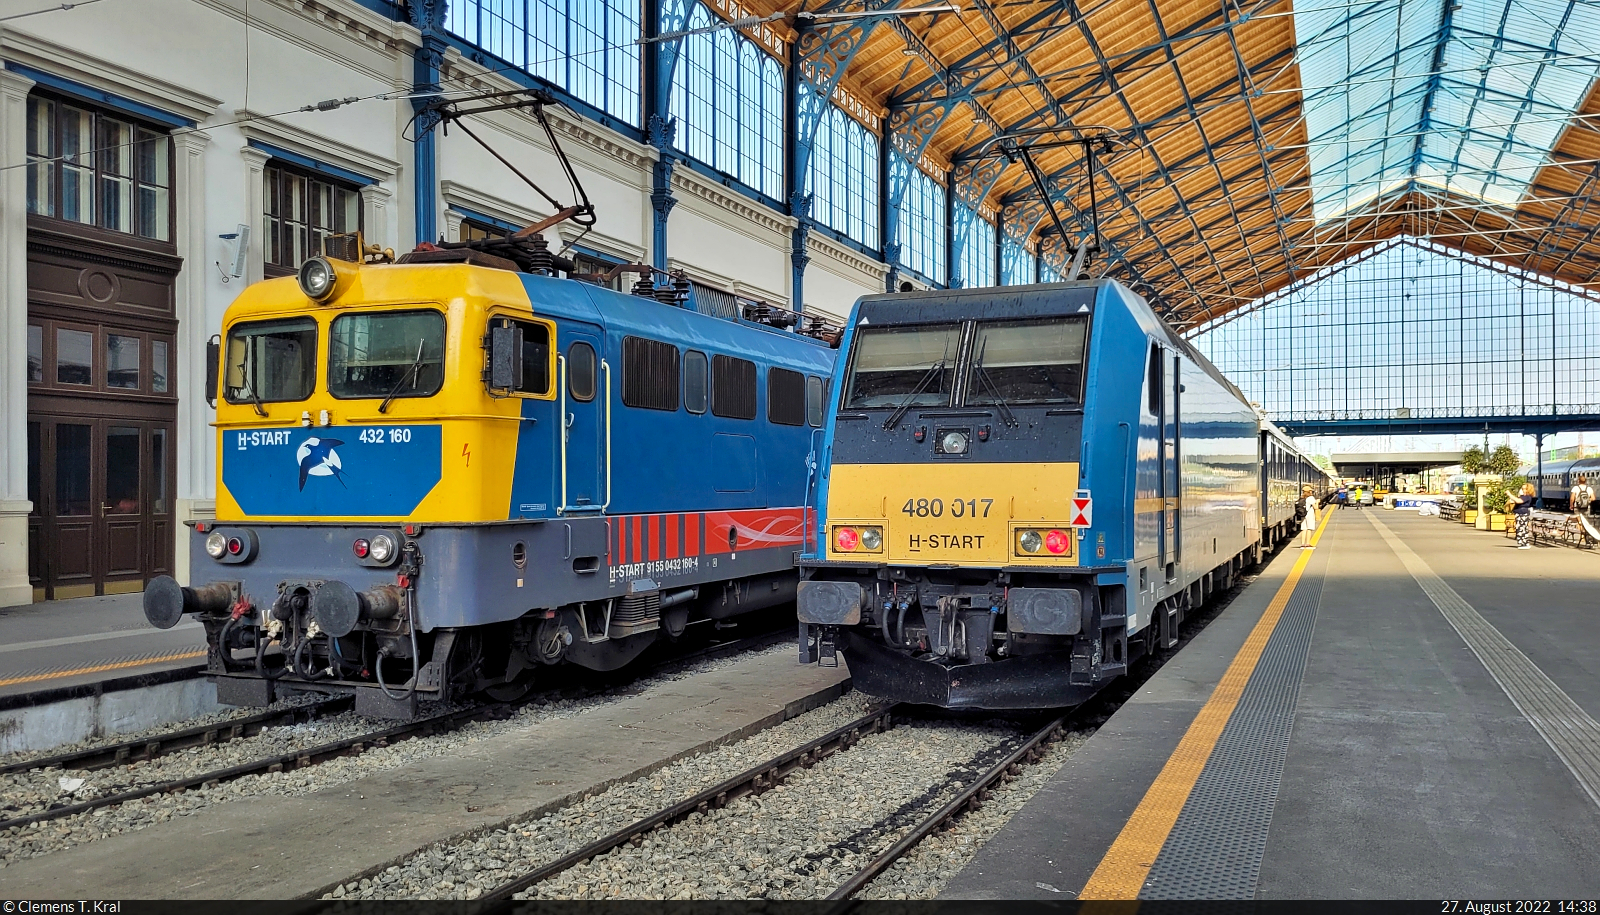 Bahnhof Budapest-Nyugati pu (HU):
Während 480 017-7 mit den Wagen des Venice Simplon-Orient-Express (VSOE) noch eine Weile stehenbleibt, hat sich inzwischen 432 160-4 dazugesellt.

🧰 MÁV | Belmond Ltd.
🕓 27.8.2022 | 14:38 Uhr